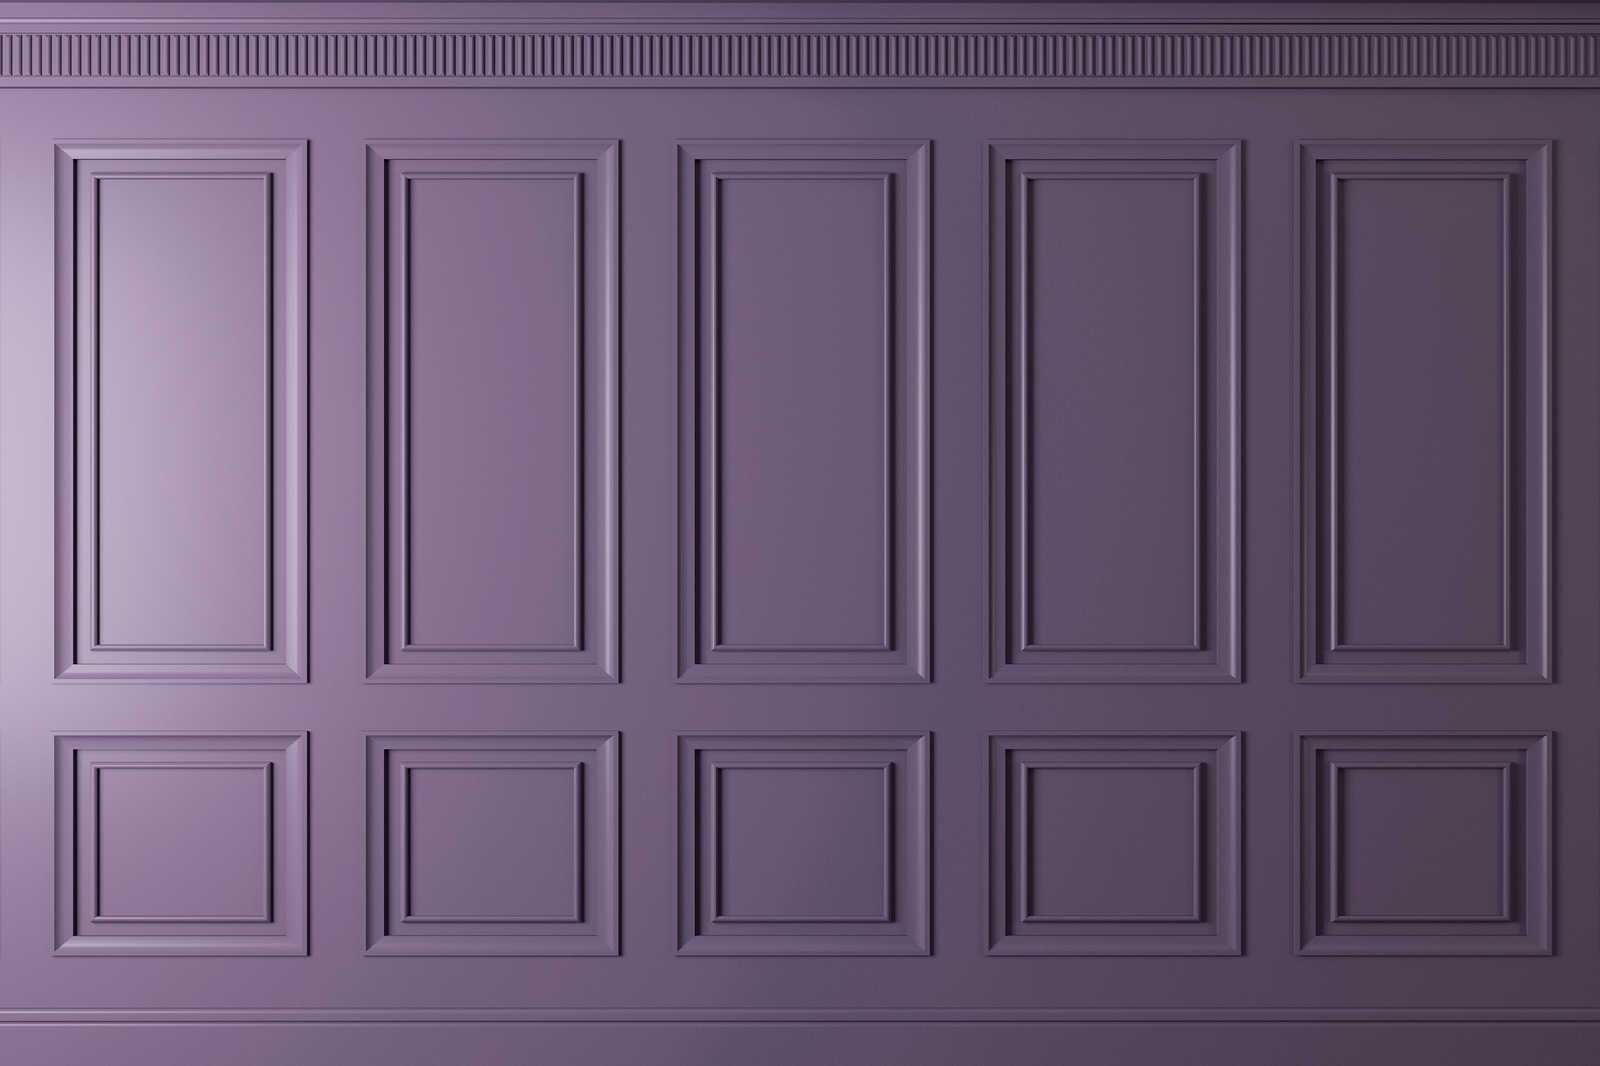             Kensington 3 - Quadro 3D in legno viola scuro, viola - 1,20 m x 0,80 m
        